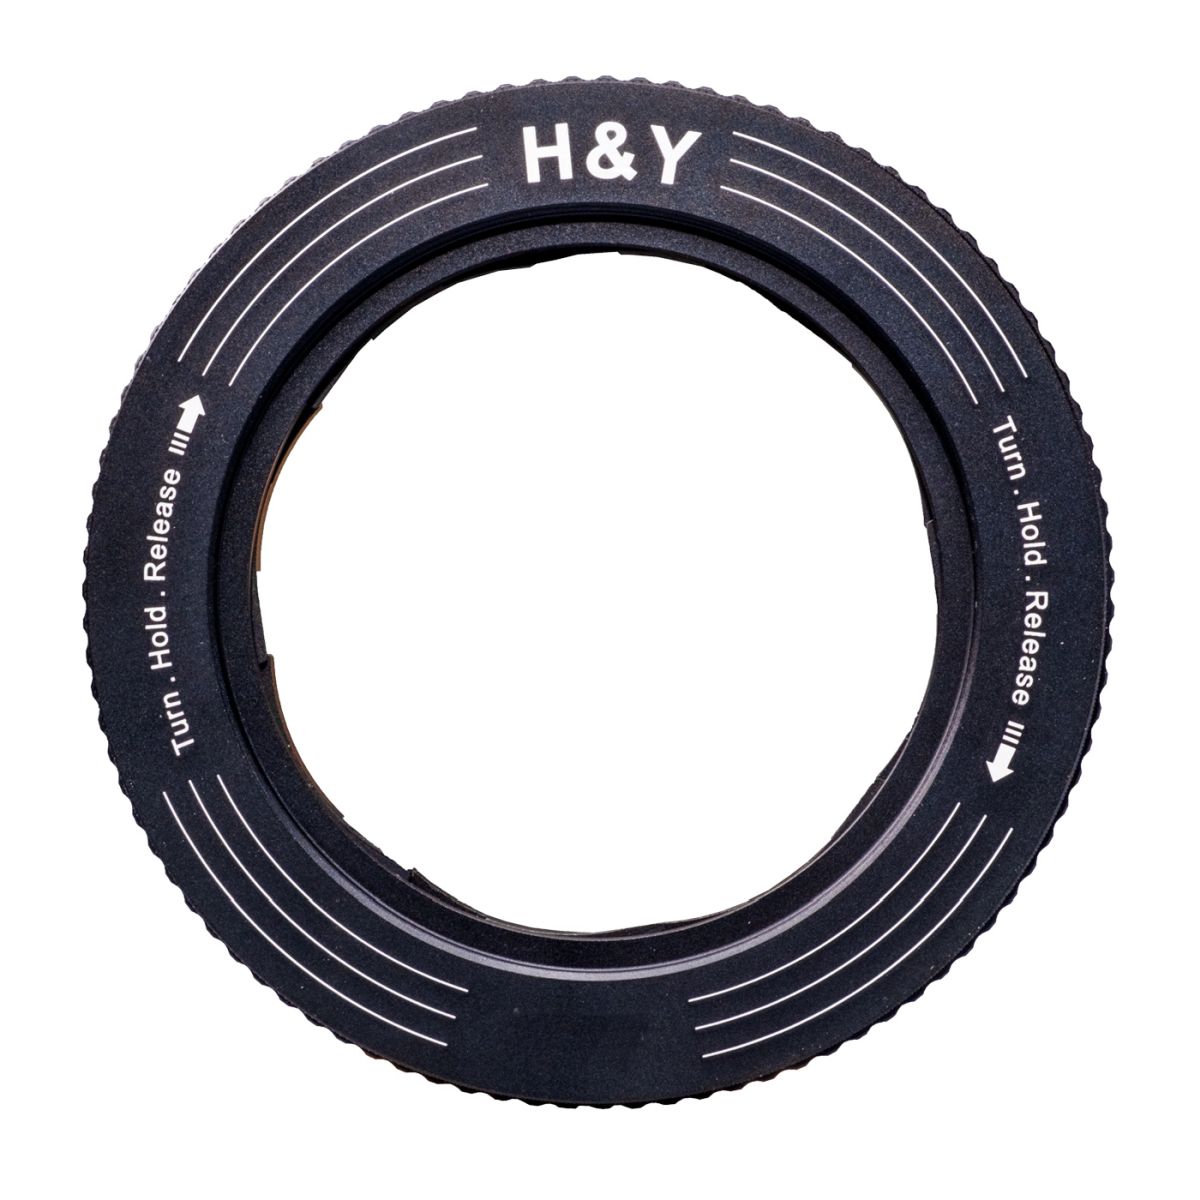 H&Y REVORING 52-72 mm Filteradapter für 77 mm Filter